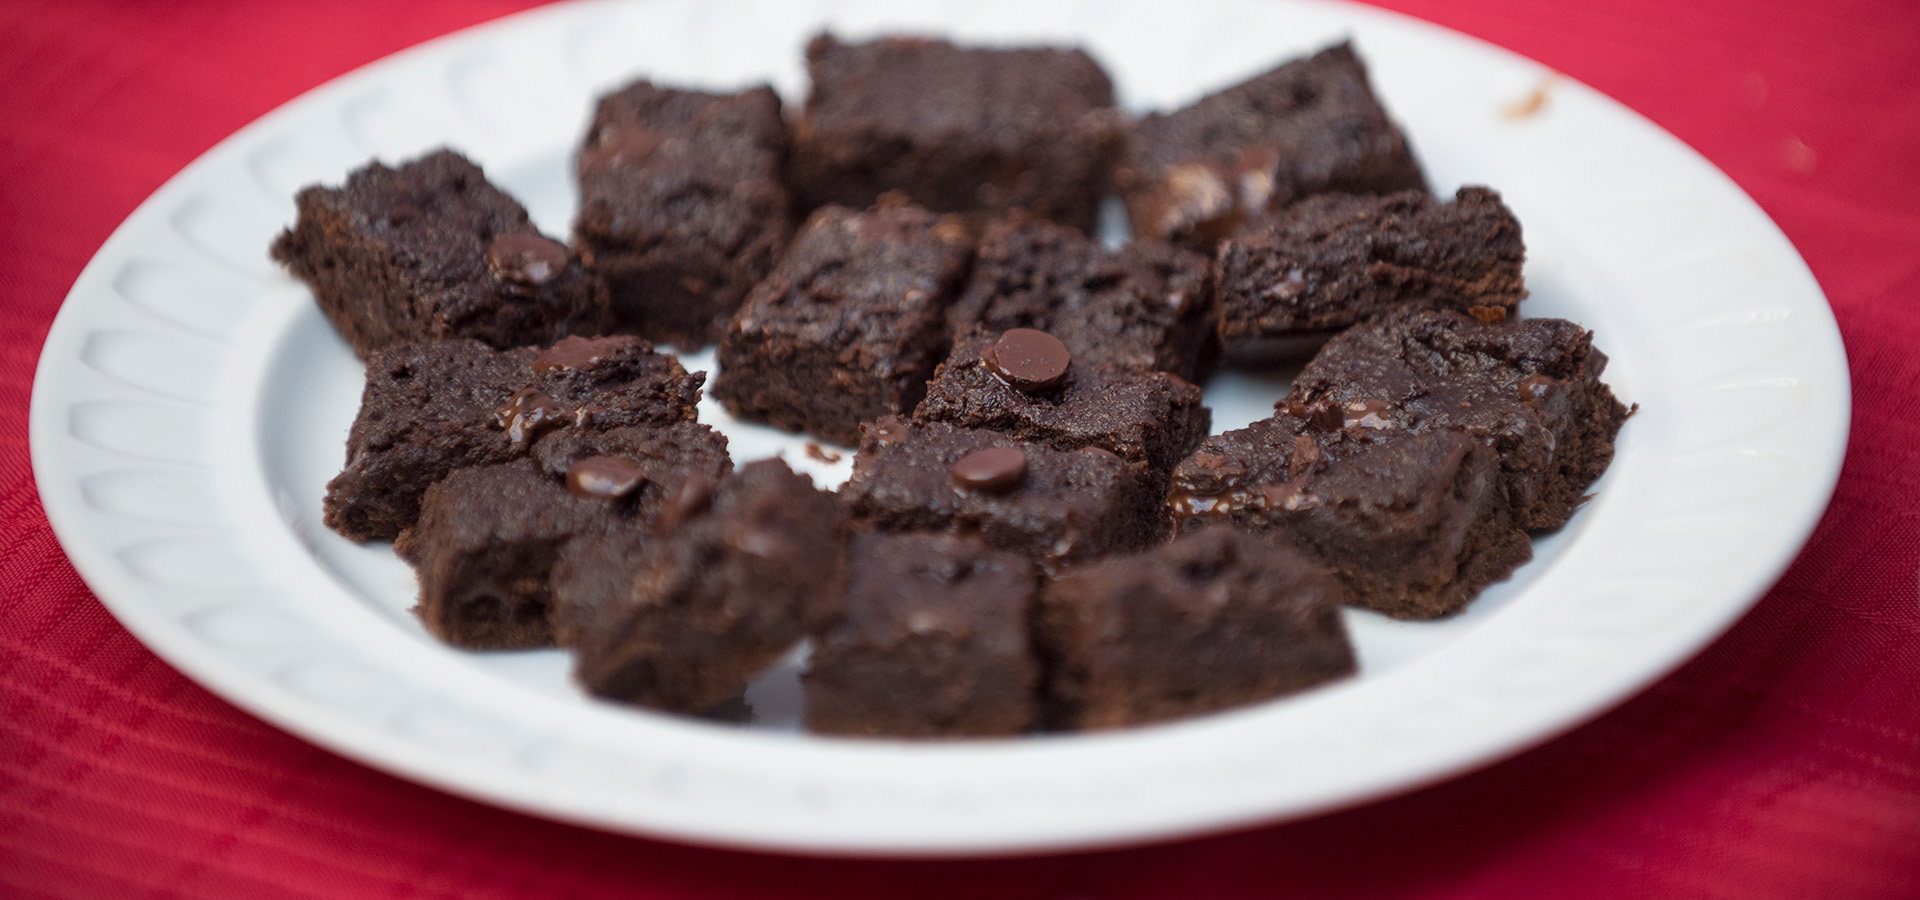  A plate of vegan brownies